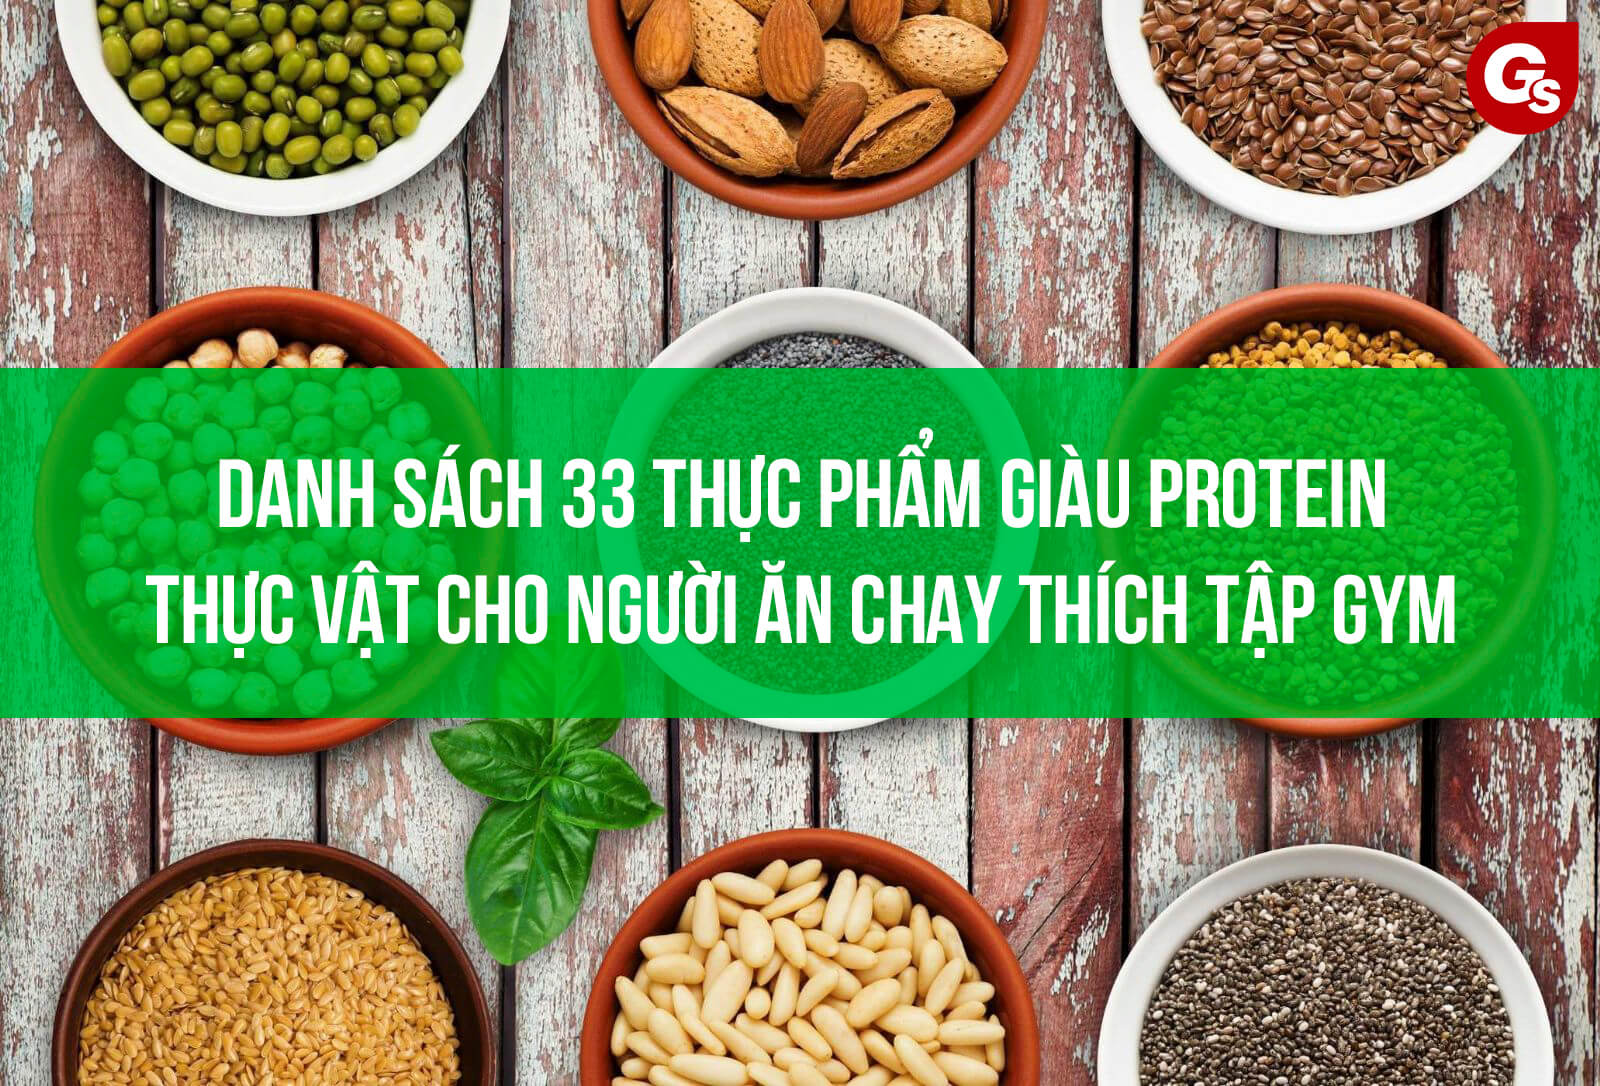 33-nguon-thuc-pham-giau-protein-thuc-vat-gymstore-123